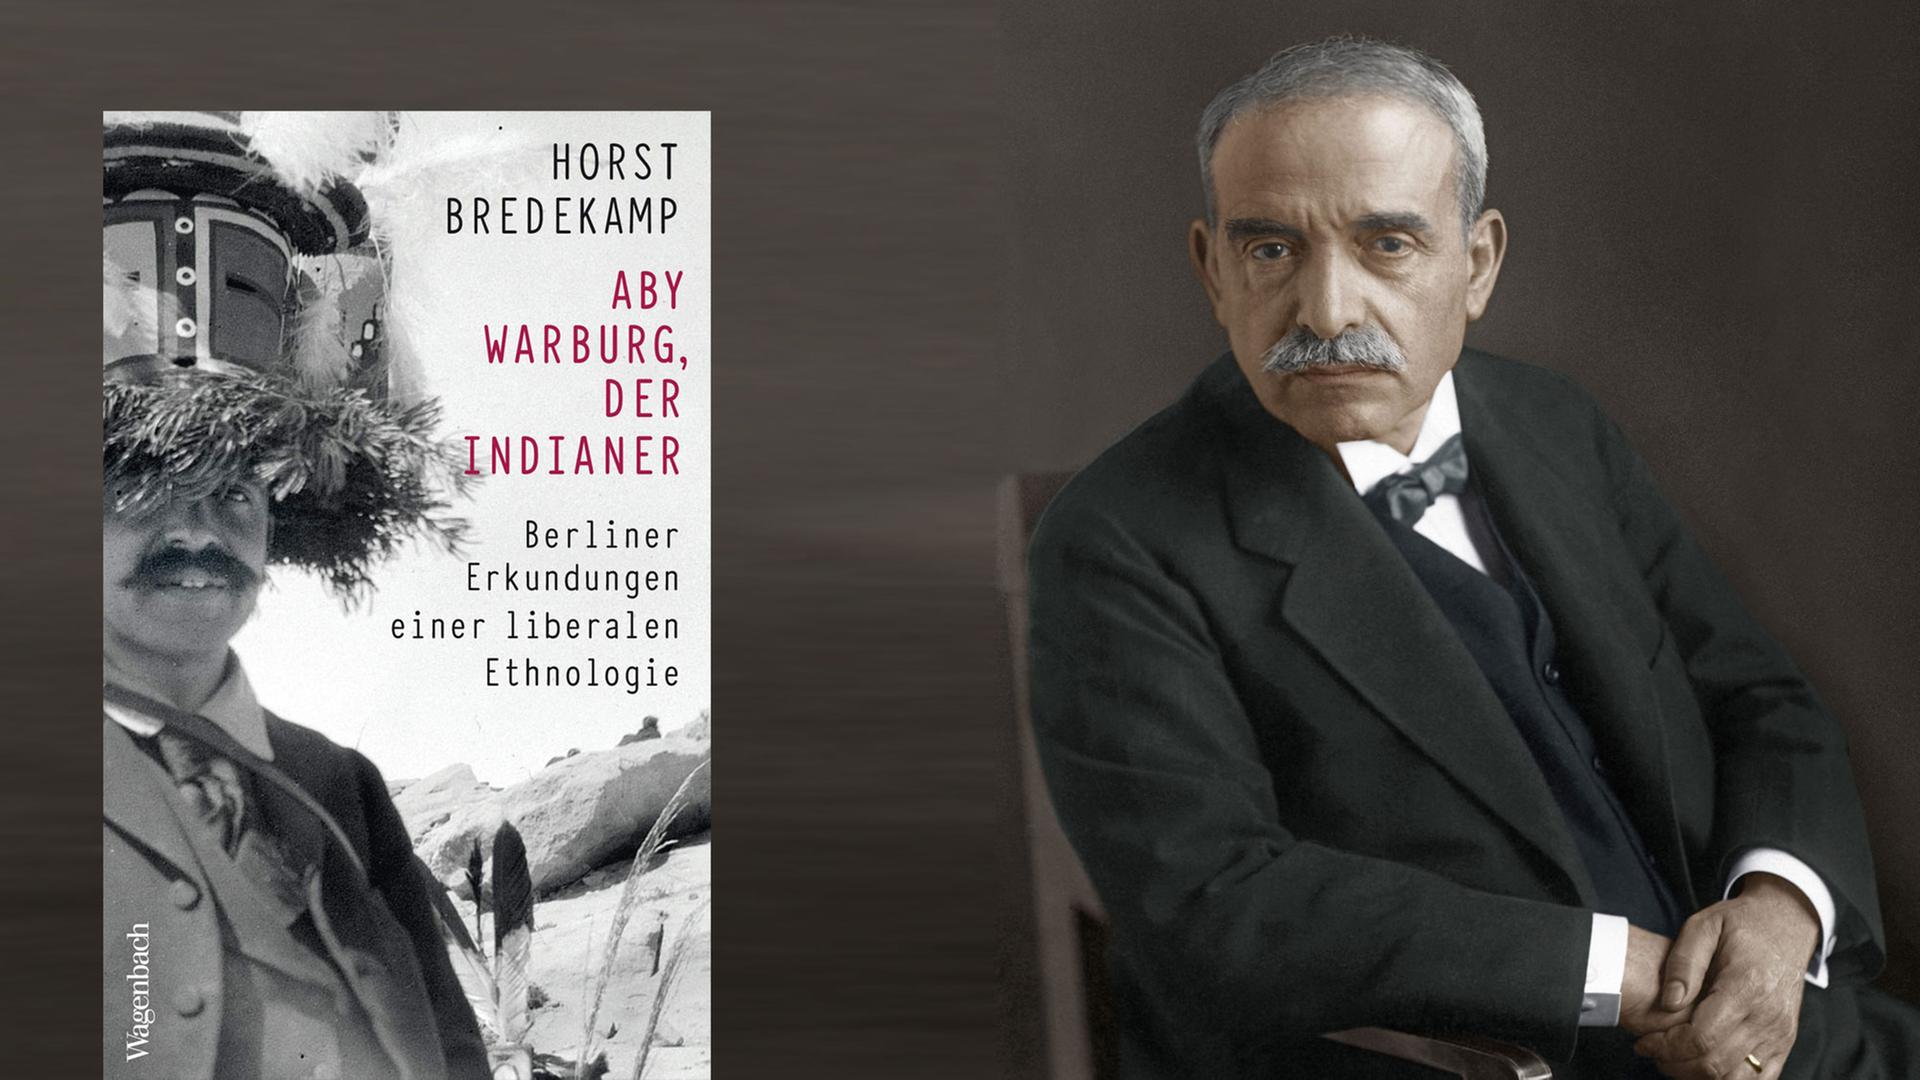 Cover von Horst Bredekamps Buch "Aby Warburg, der Indianer". Im Hintergrund ist ein Foto von Aby Warburg zu sehen.